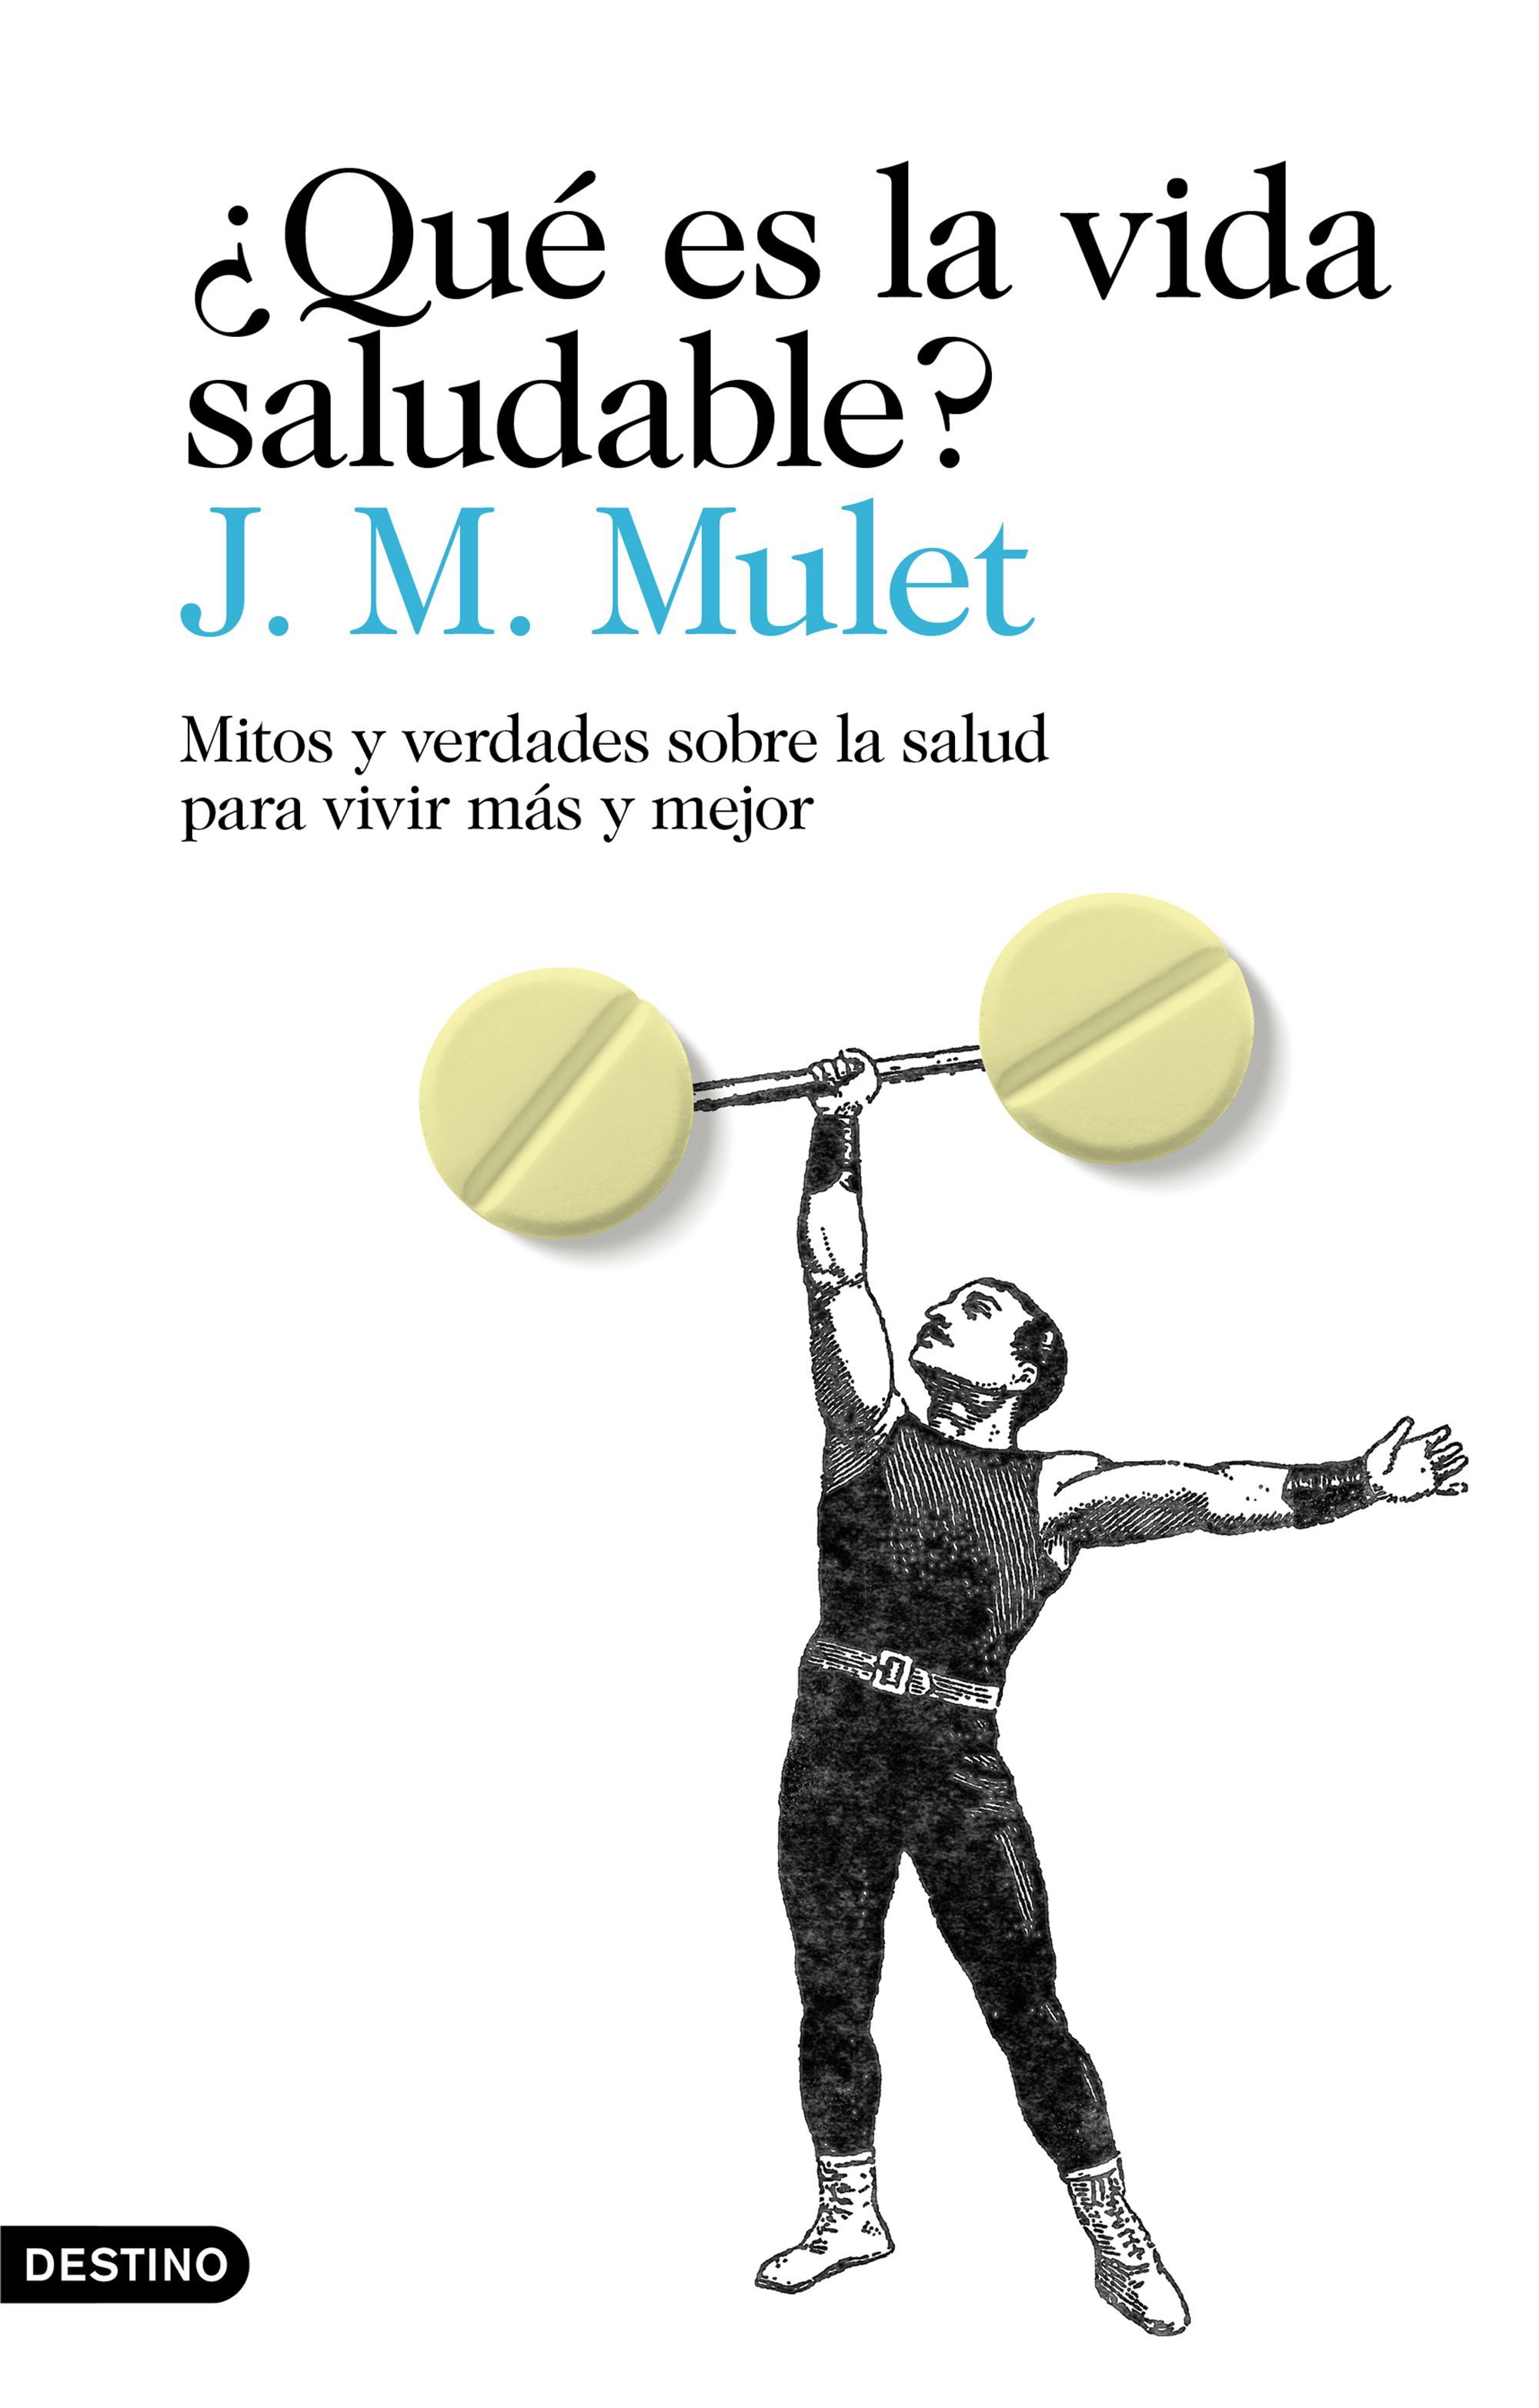 J.M. Mulet aclara 103 mitos sobre salud en su libro Qué es la vida saludable